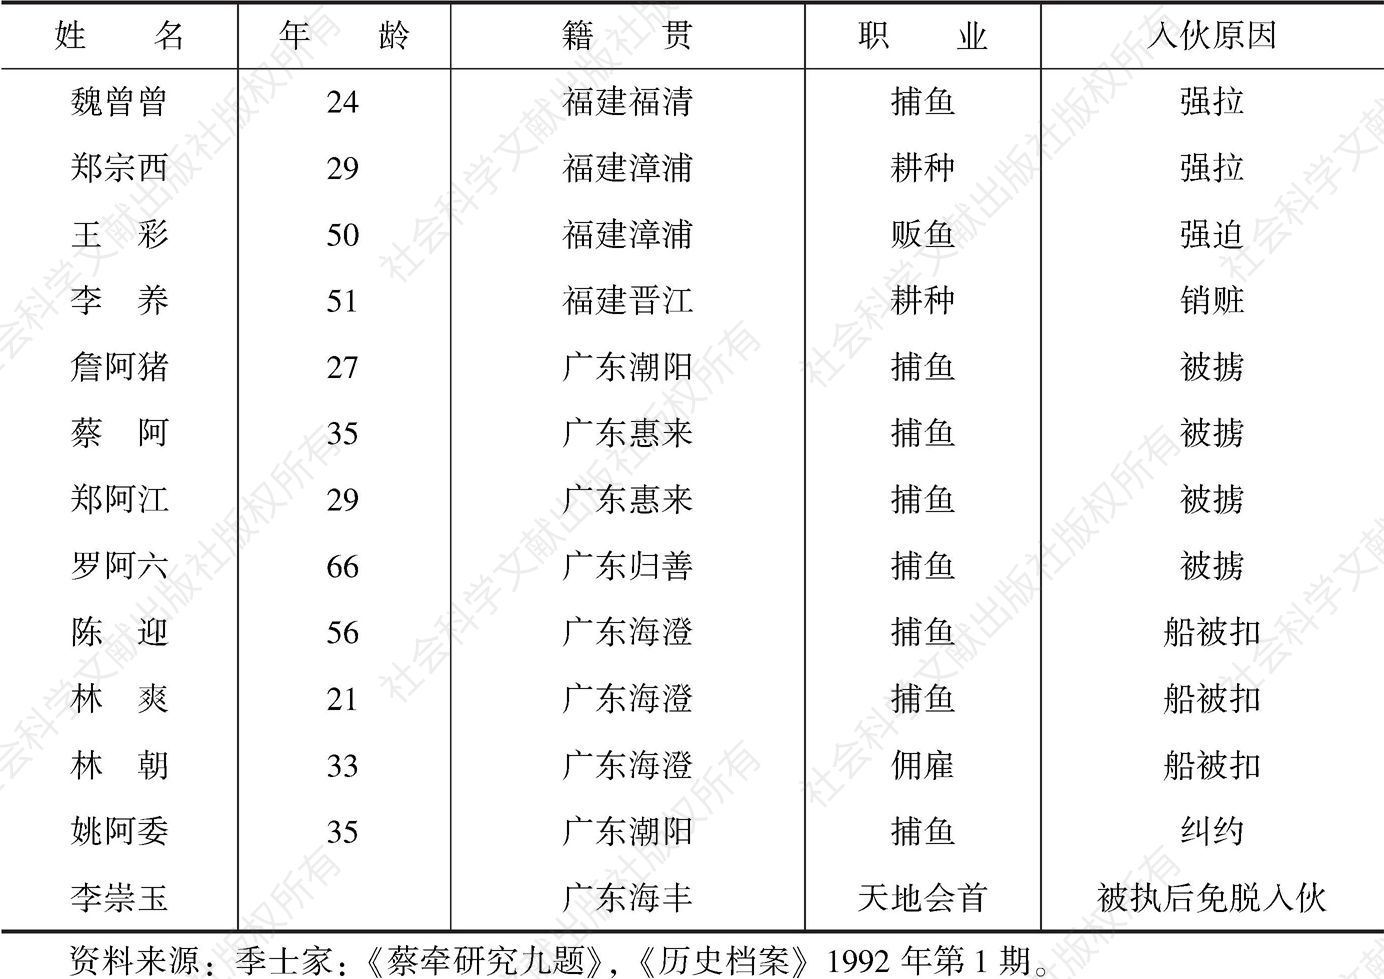 表1-2 33名被捕的蔡牵集团成员资料-续表